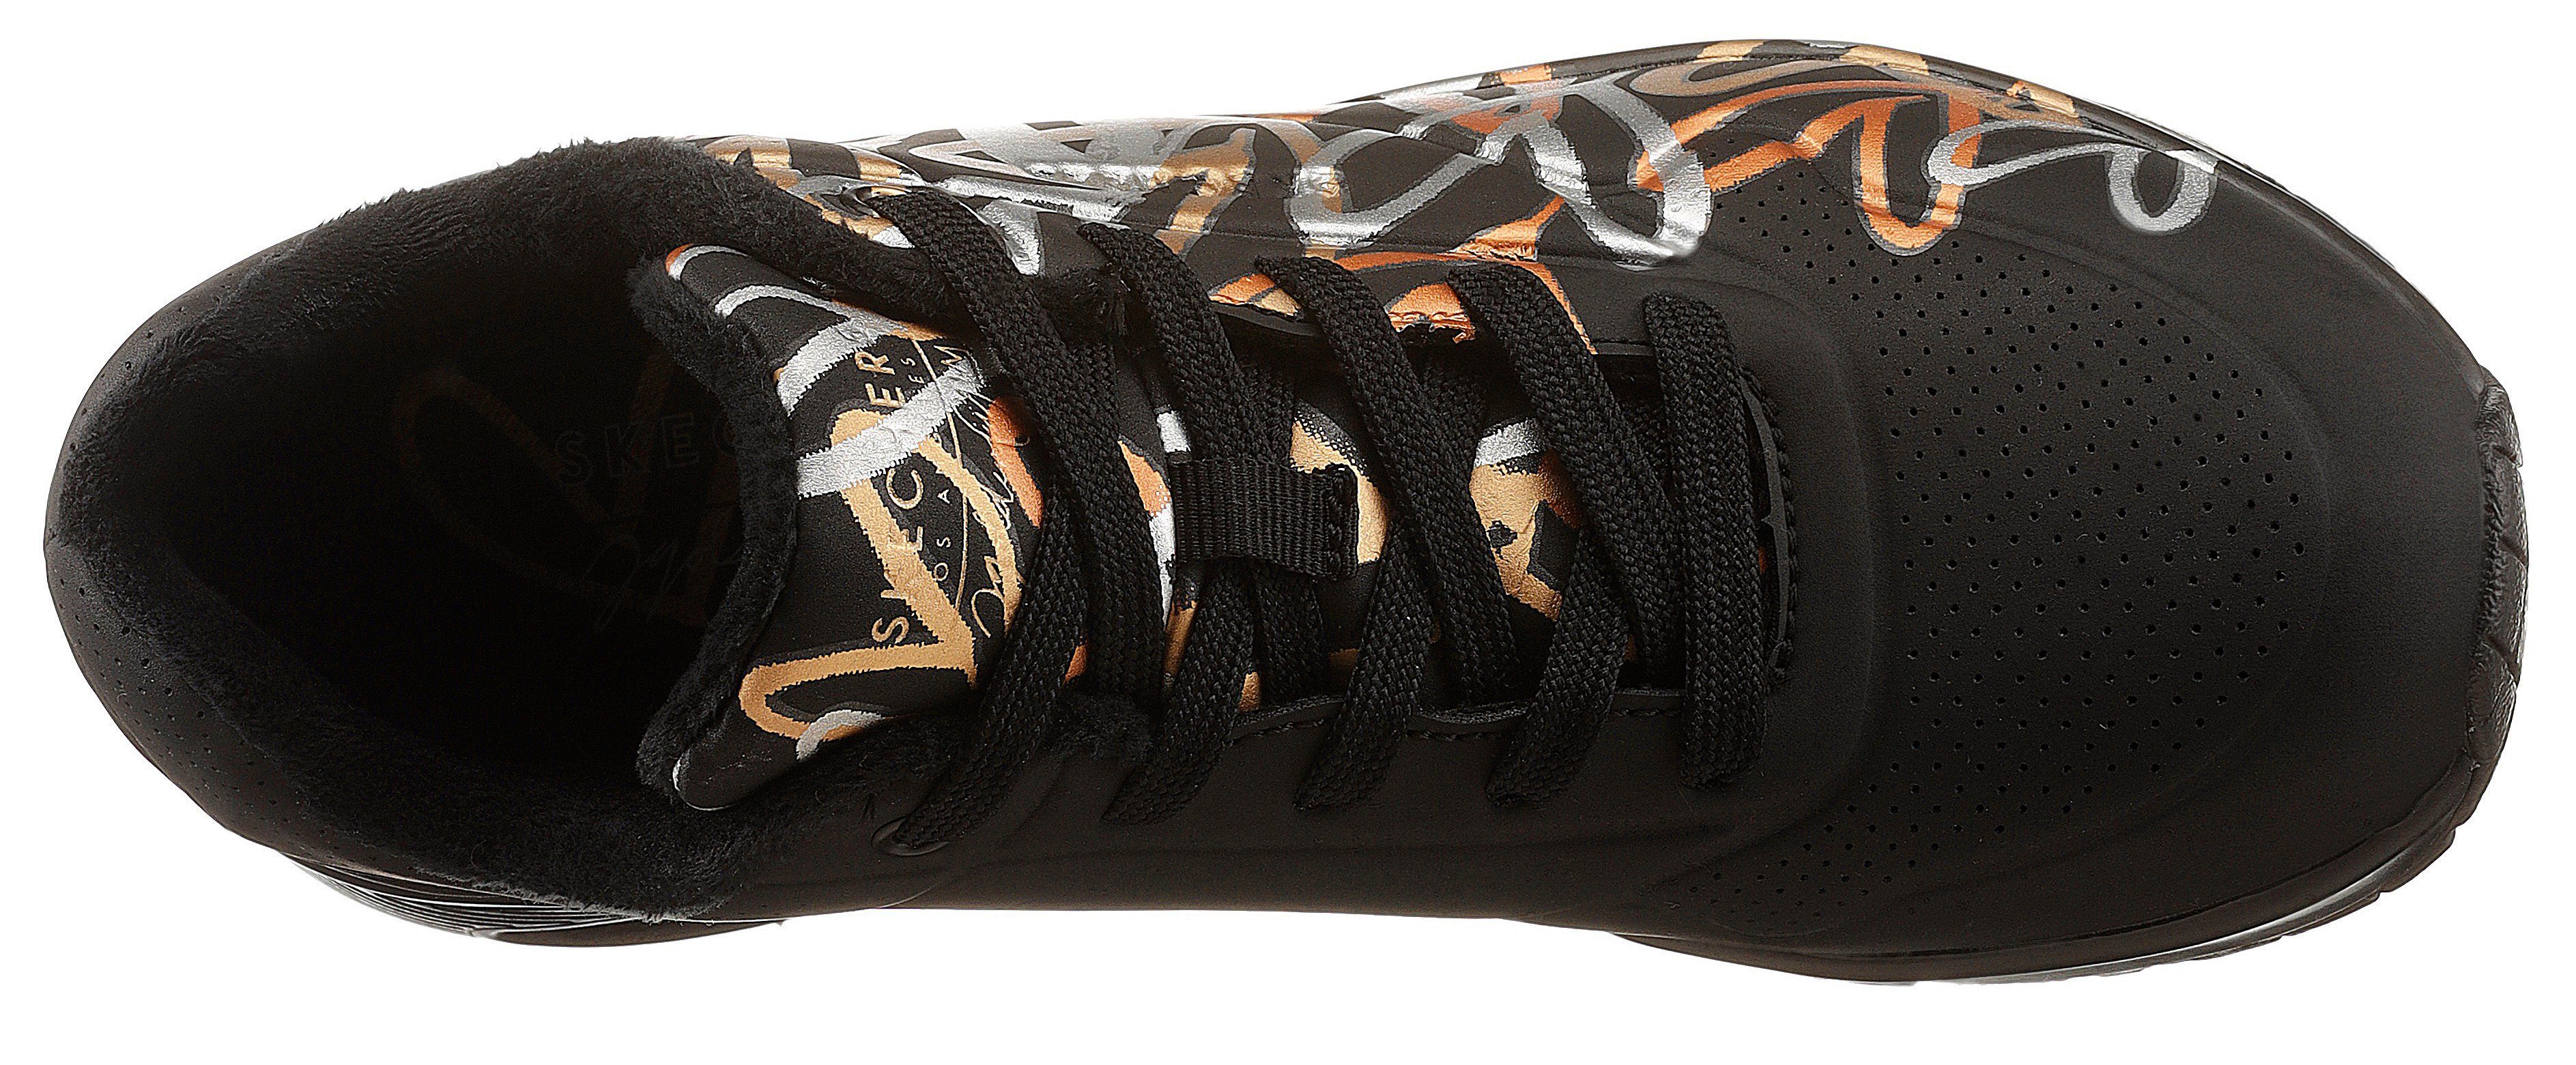 schwarz Metallic-Print mit Sneaker LOVE trendigen UNO Skechers - METALLIC